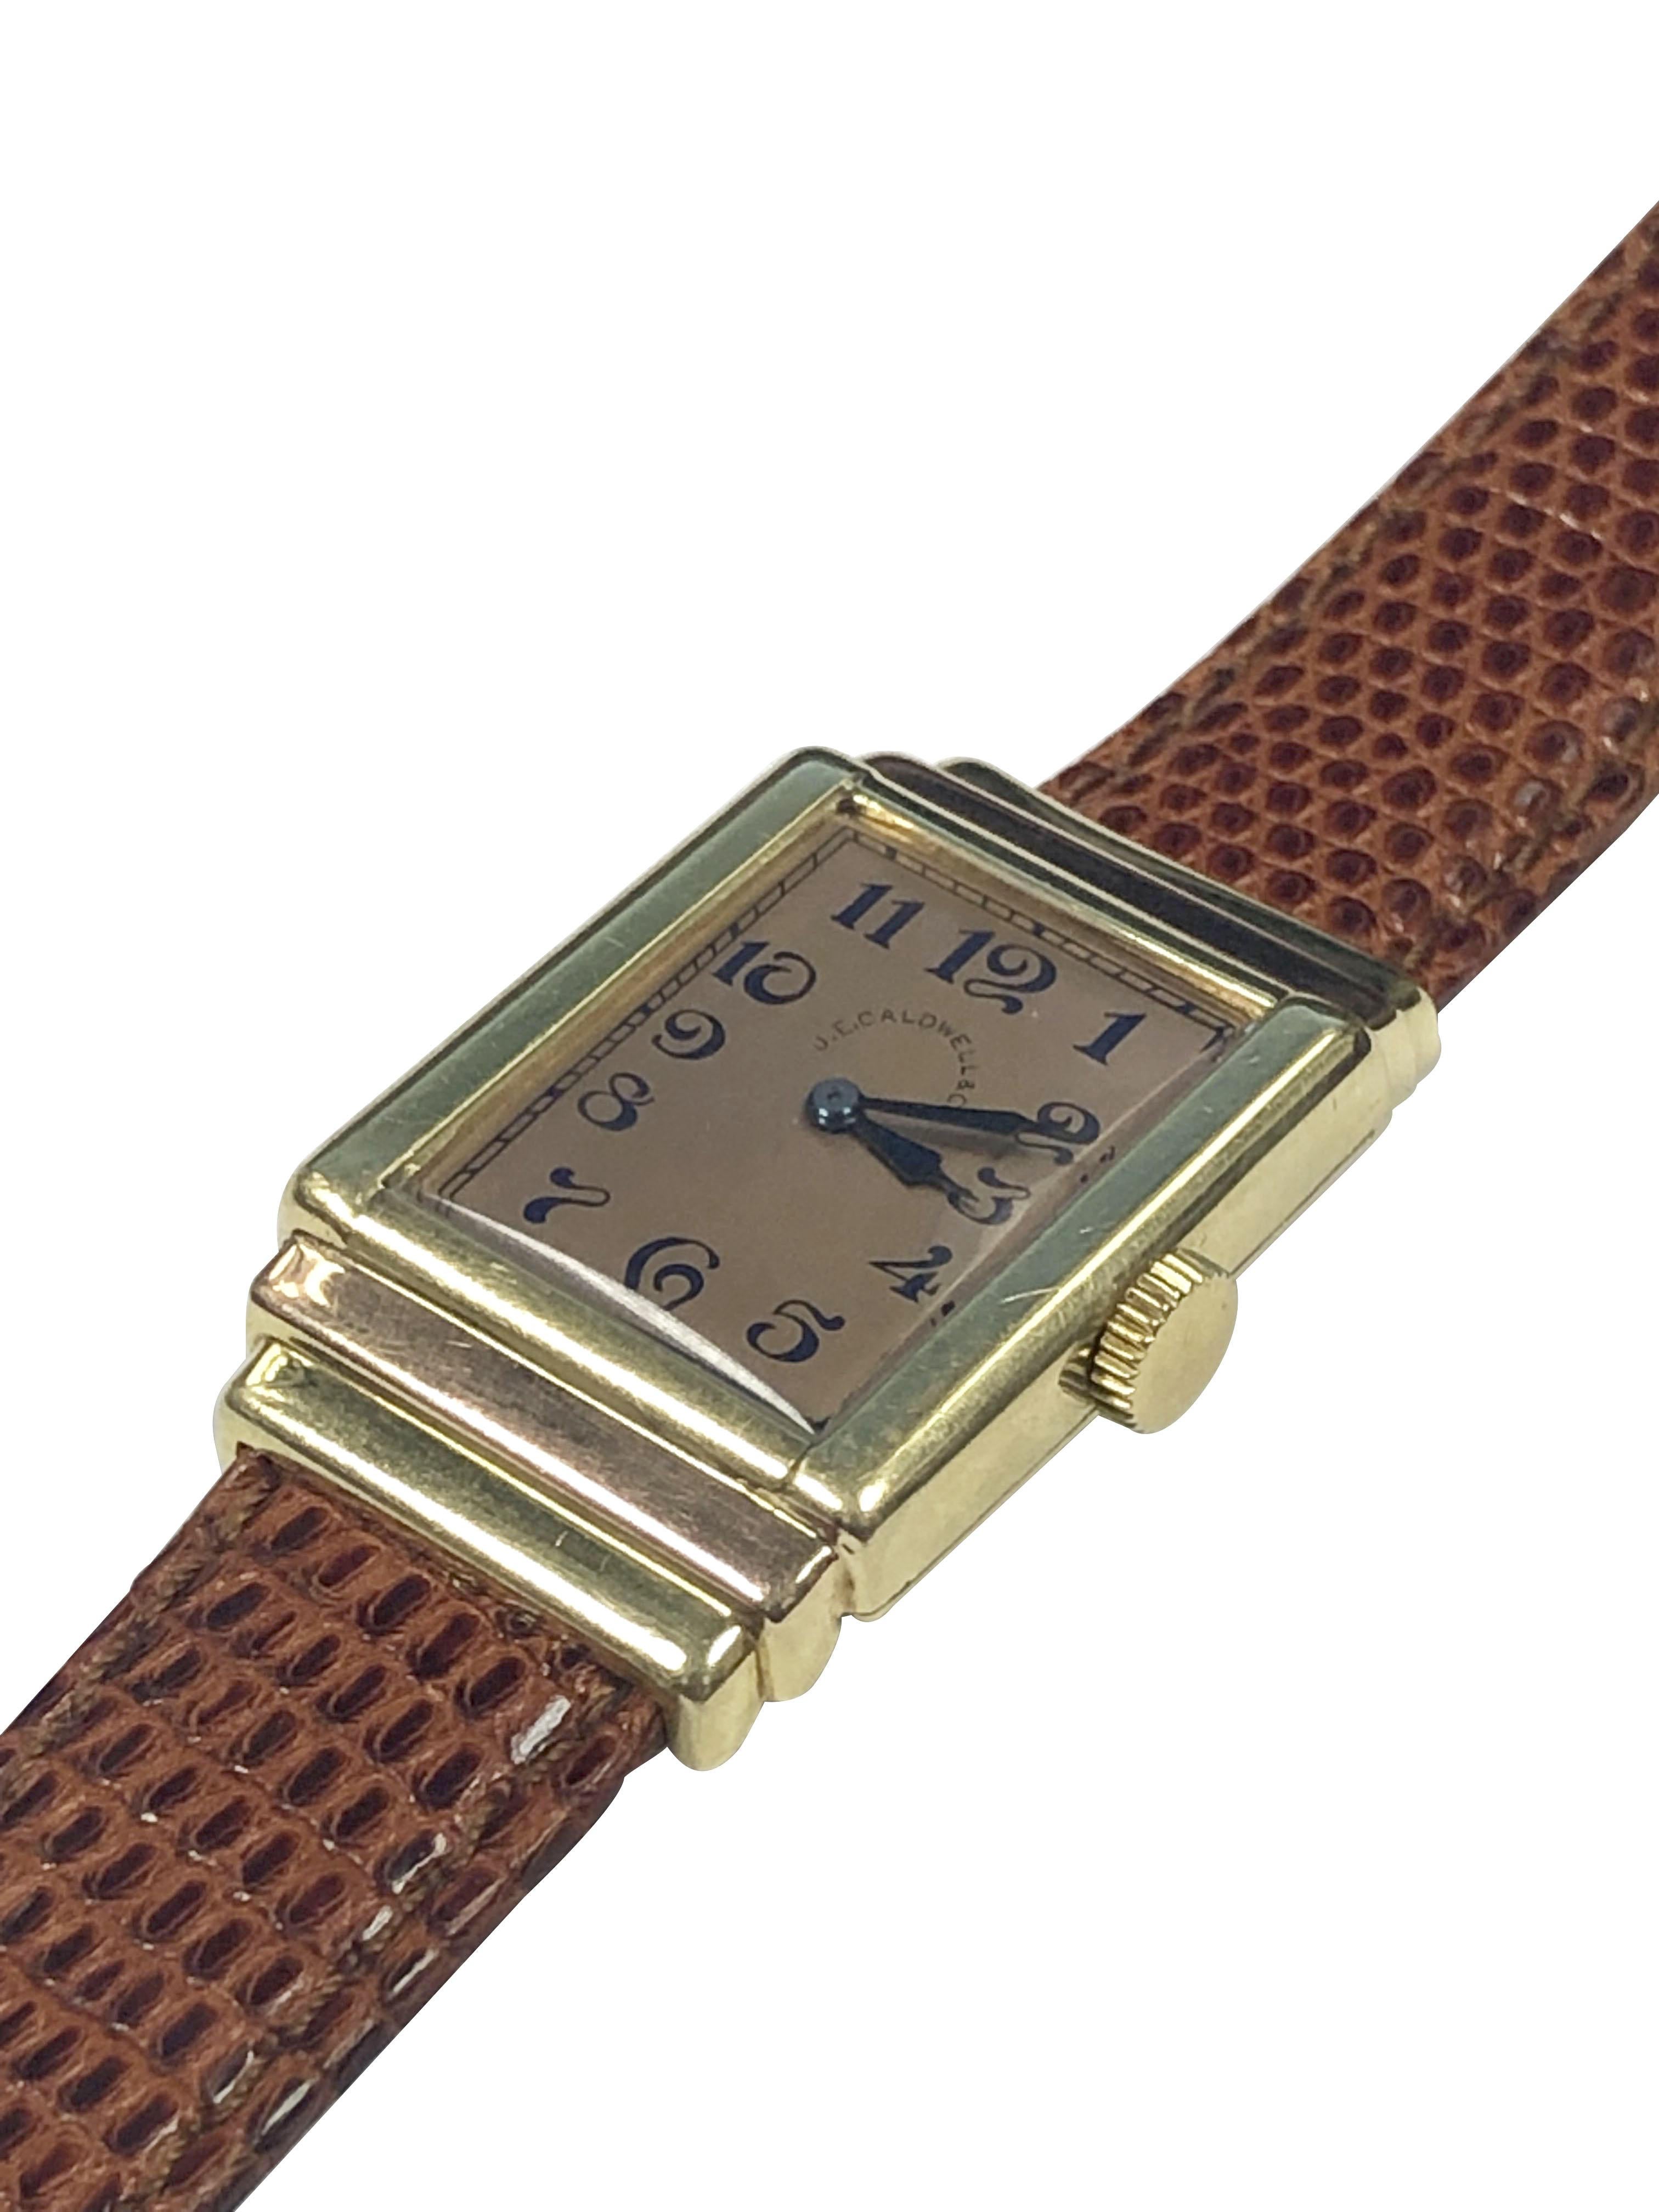 Circa 1930 A.I.C. International Watch Company, montre-bracelet vendue au détail par C.E. Caldwell. 39 X 25 M.M. Boîtier 2 pièces 18k vert et or rose étagé par les fabricants de boîtiers Cress Arrow. Mouvement mécanique 17 Jewell à remontage manuel,